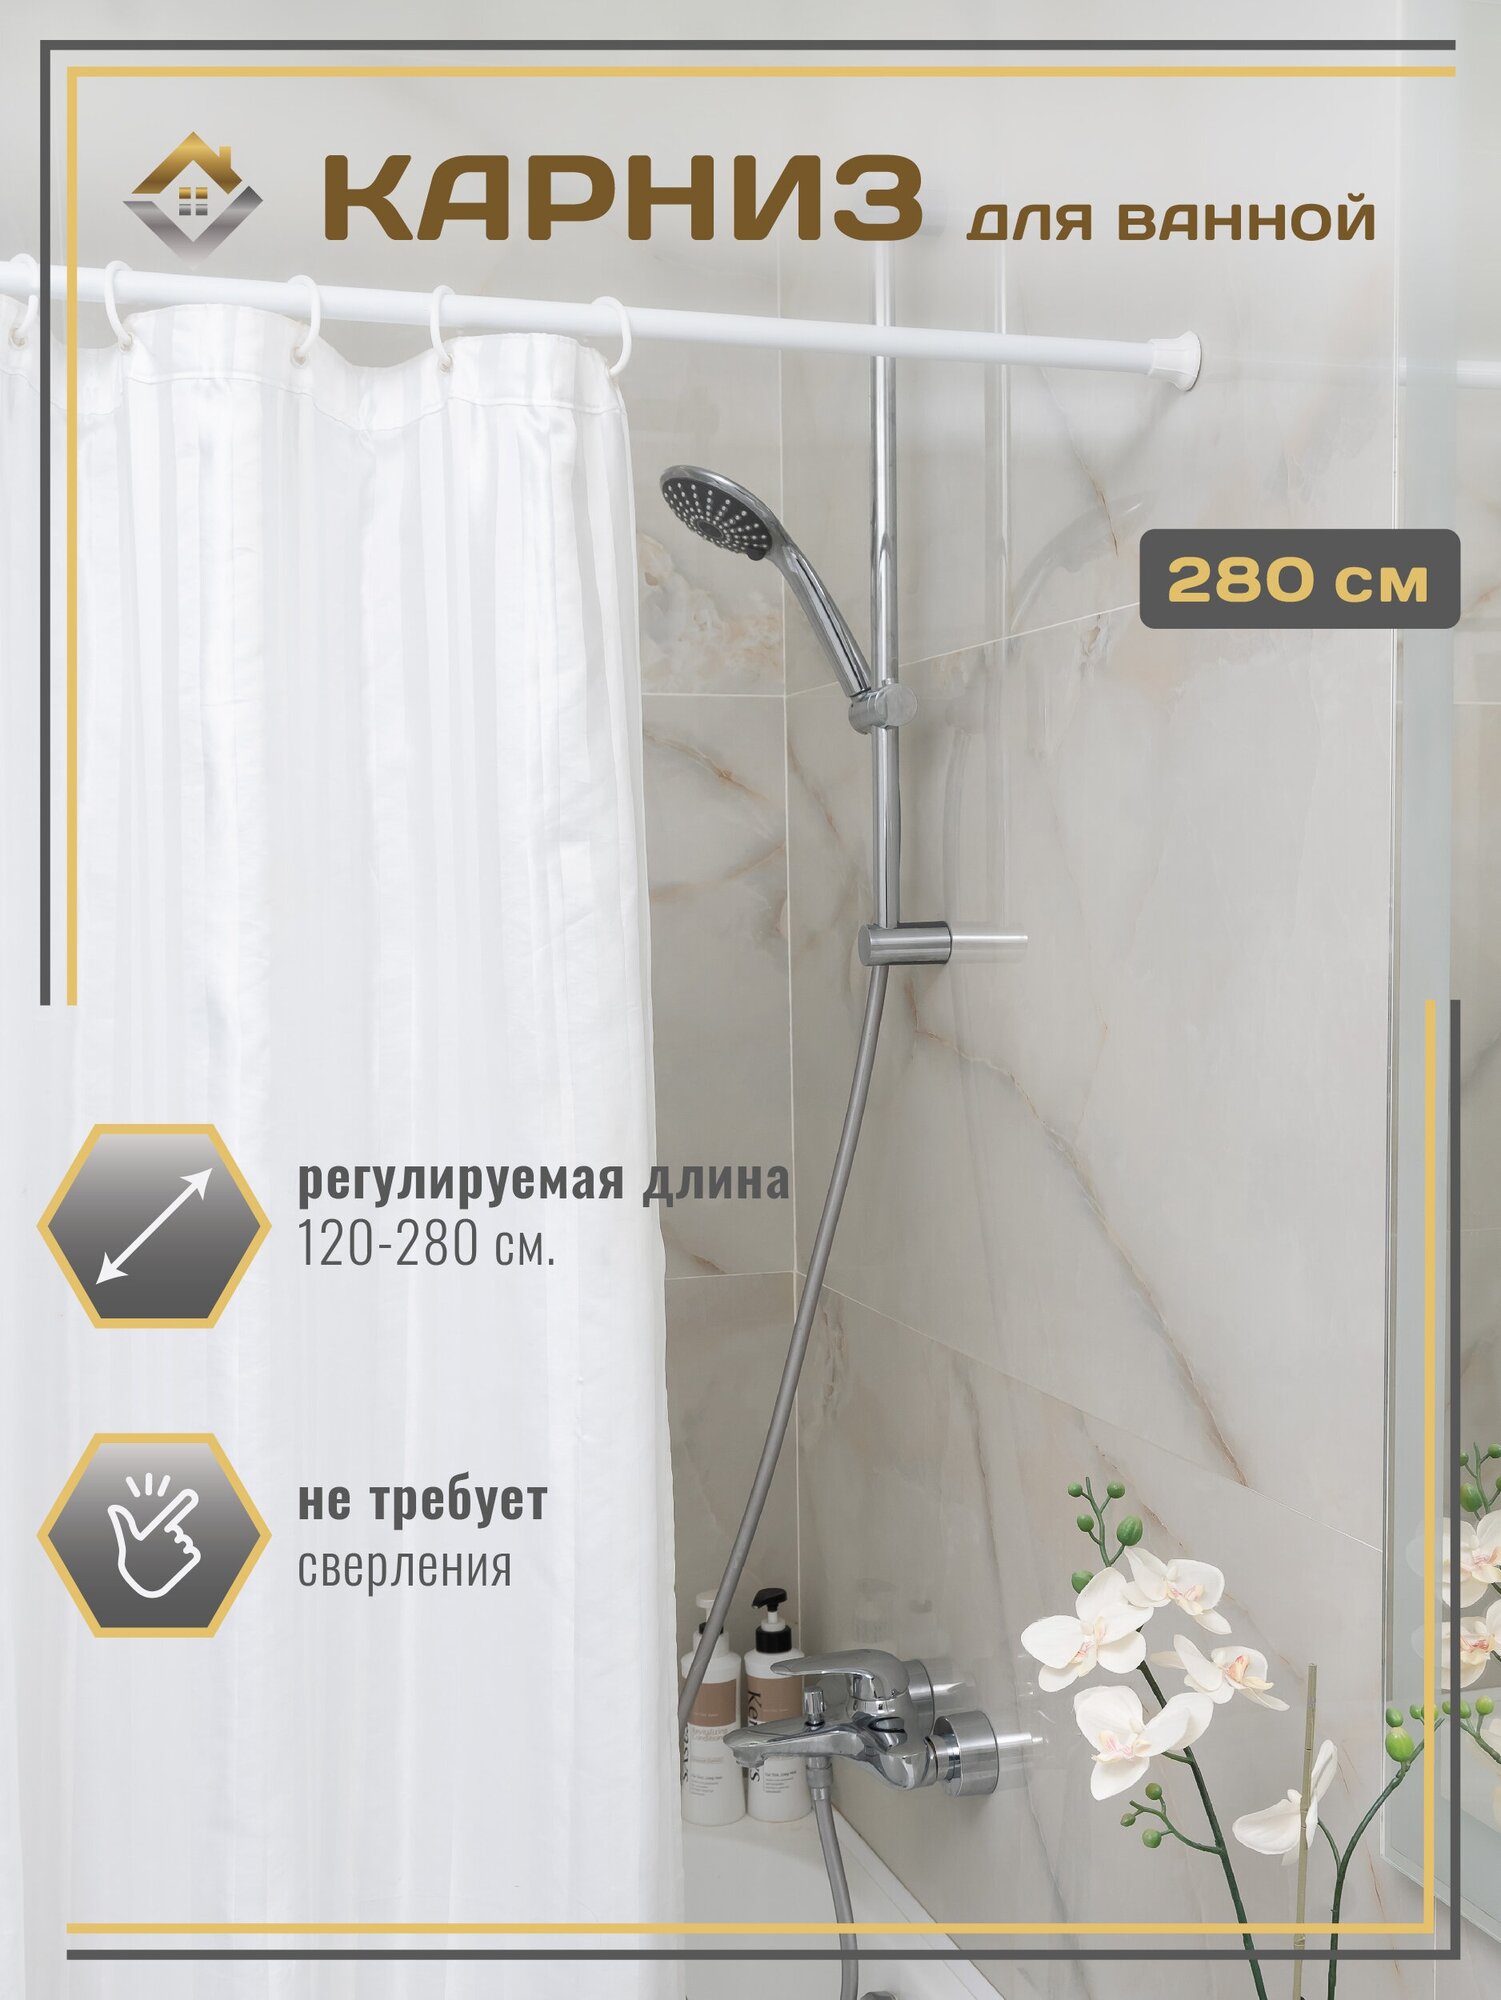 Карниз для ванной (штанга для шторы в ванной) телескопический (раздвижной) для штор 120-280см, белый